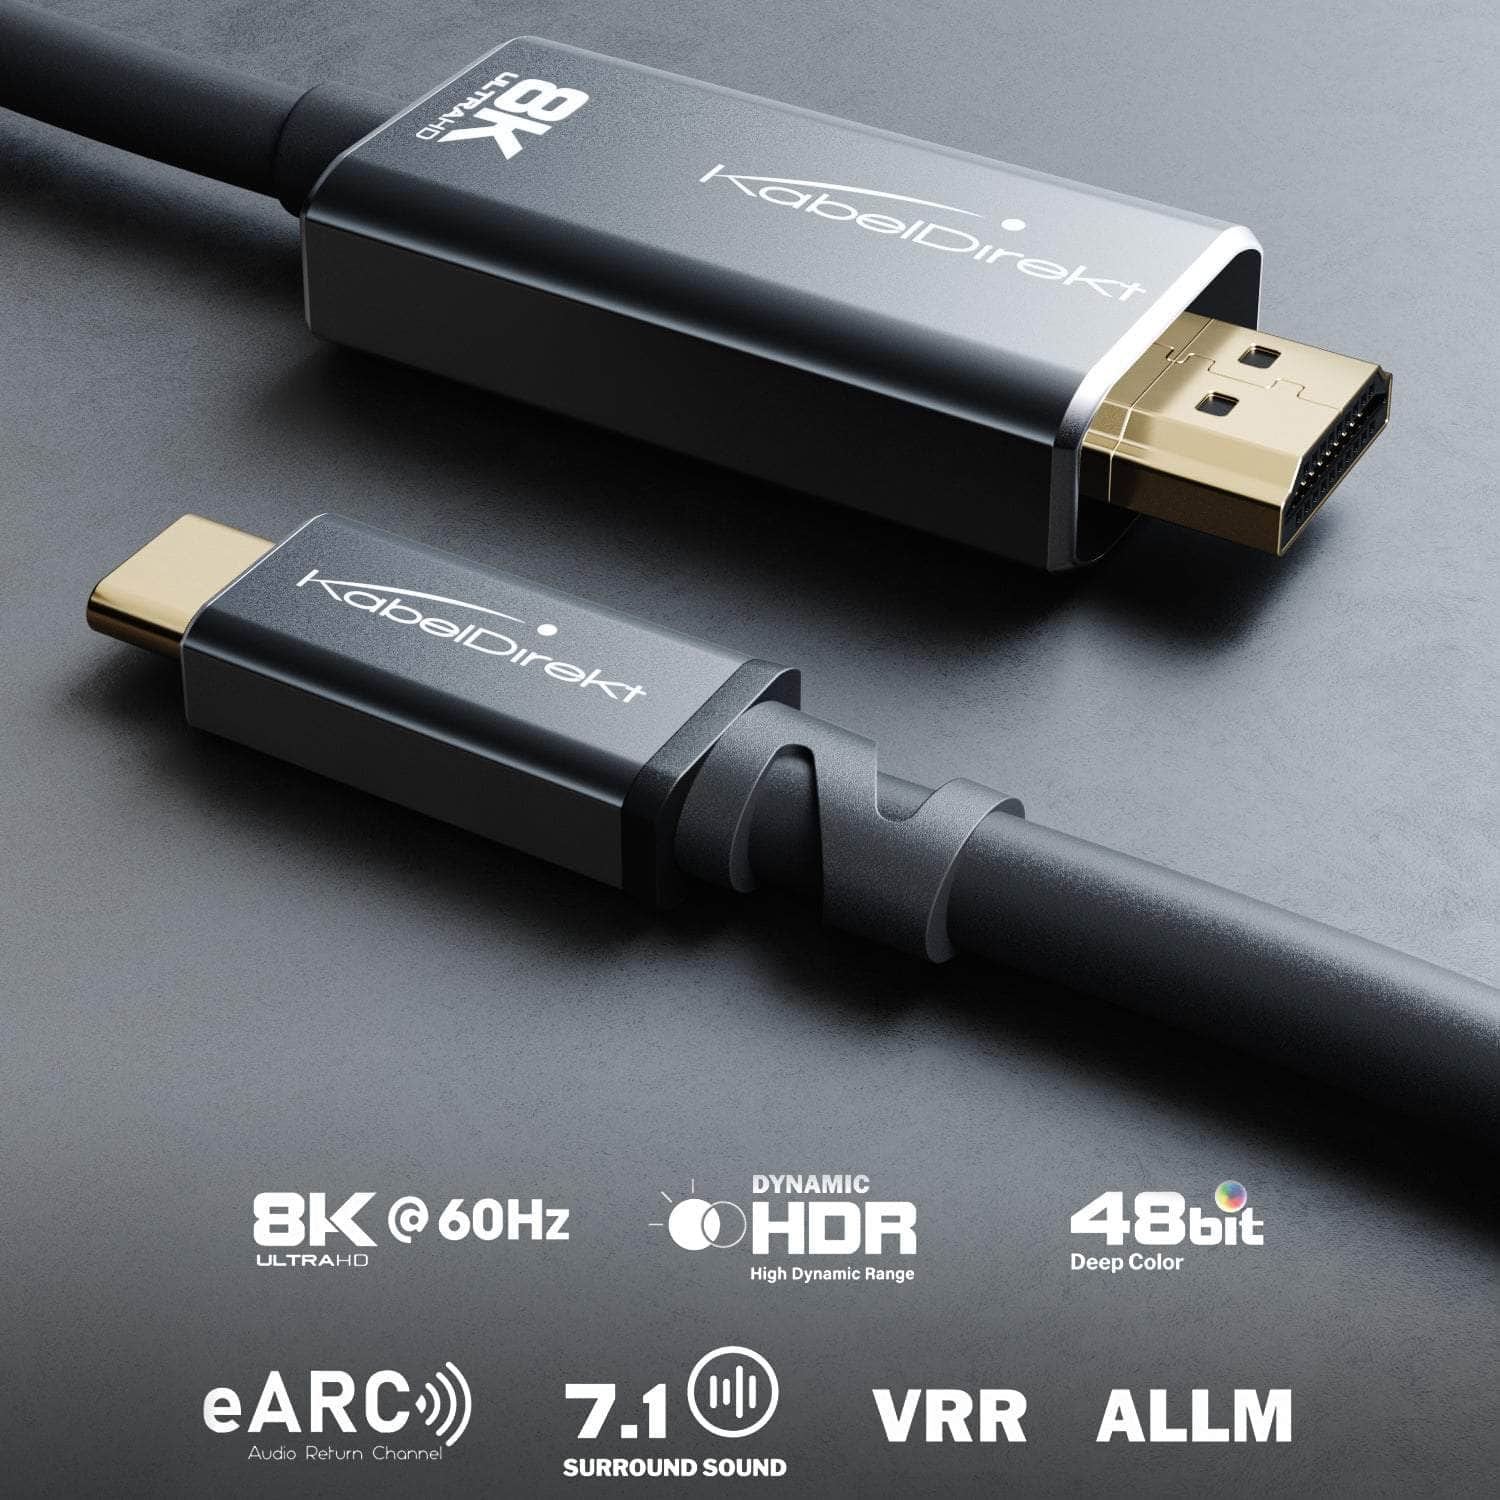 Literaire kunsten vredig Doordeweekse dagen USB-C to HDMI 2.1 adapter cable - 2m - for 8K/60Hz or 4K/120Hz - KabelDirekt